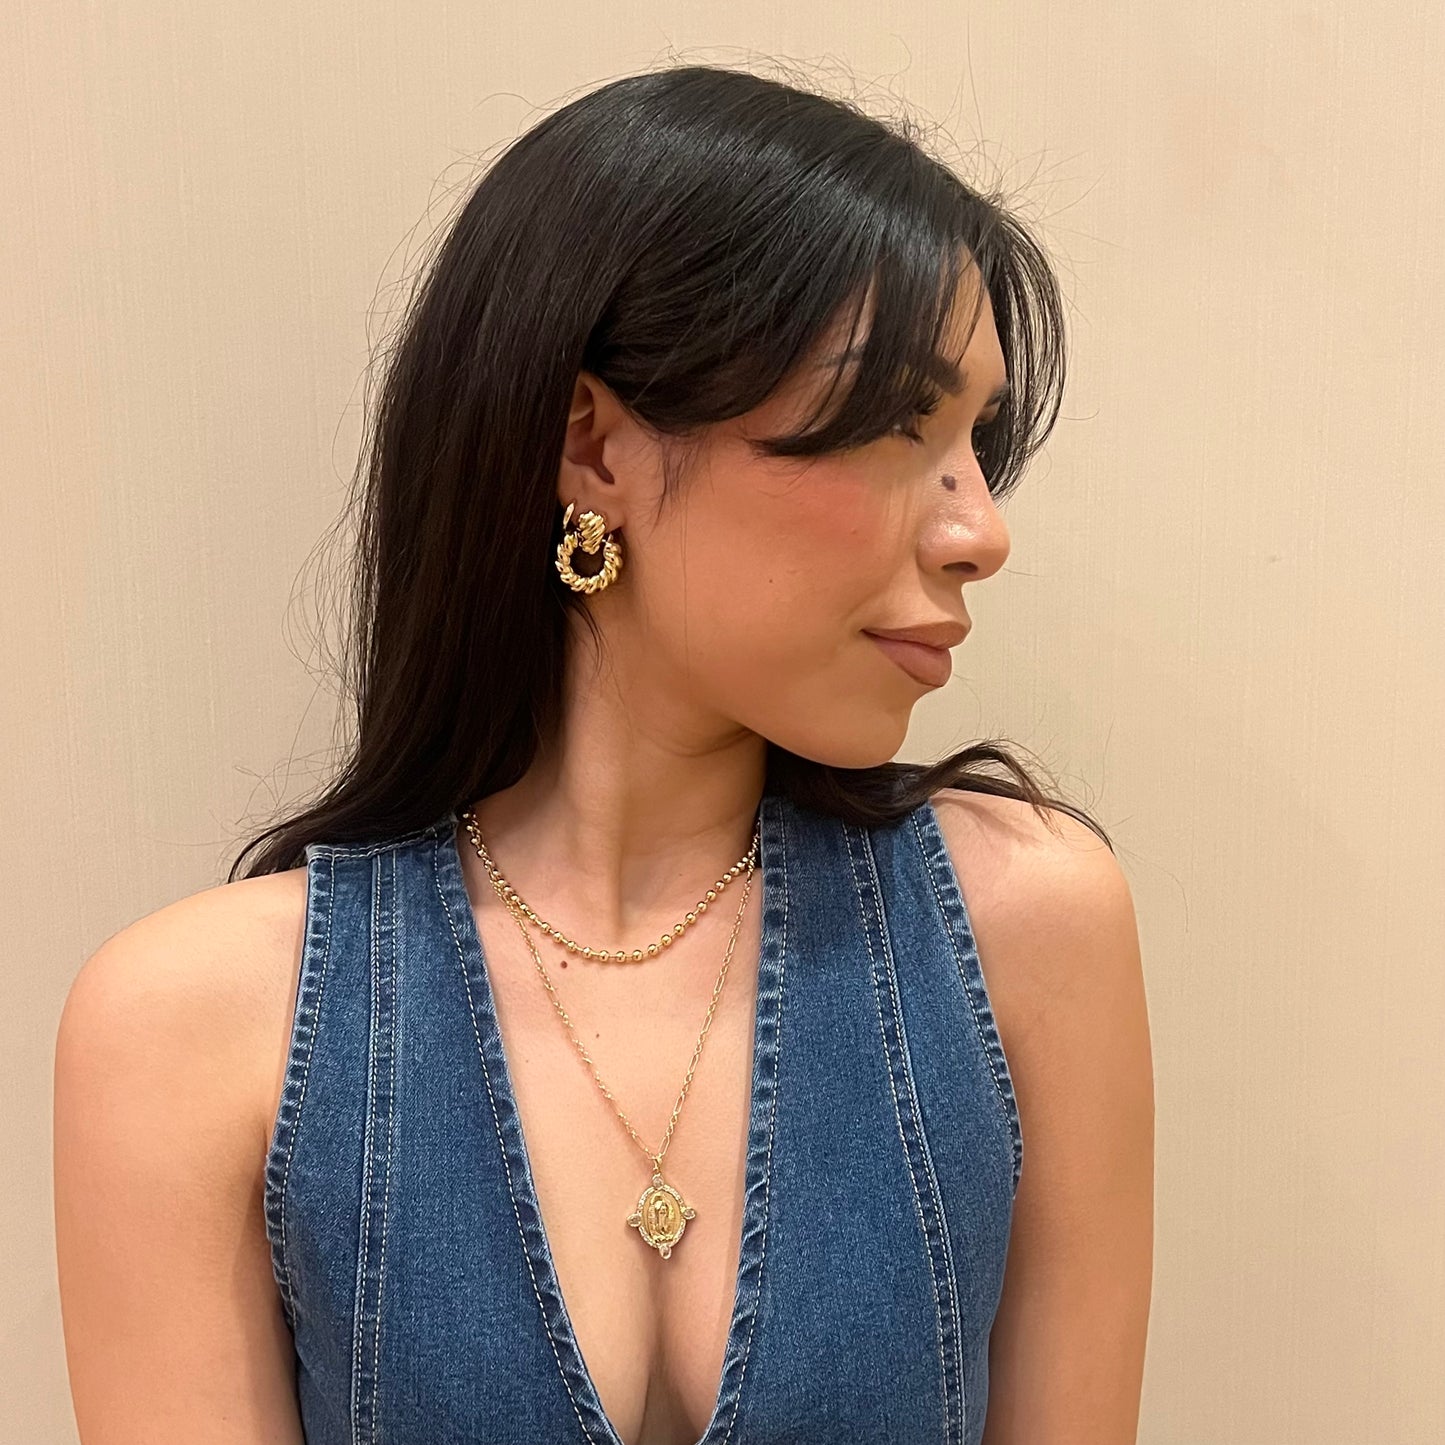 Julia earrings